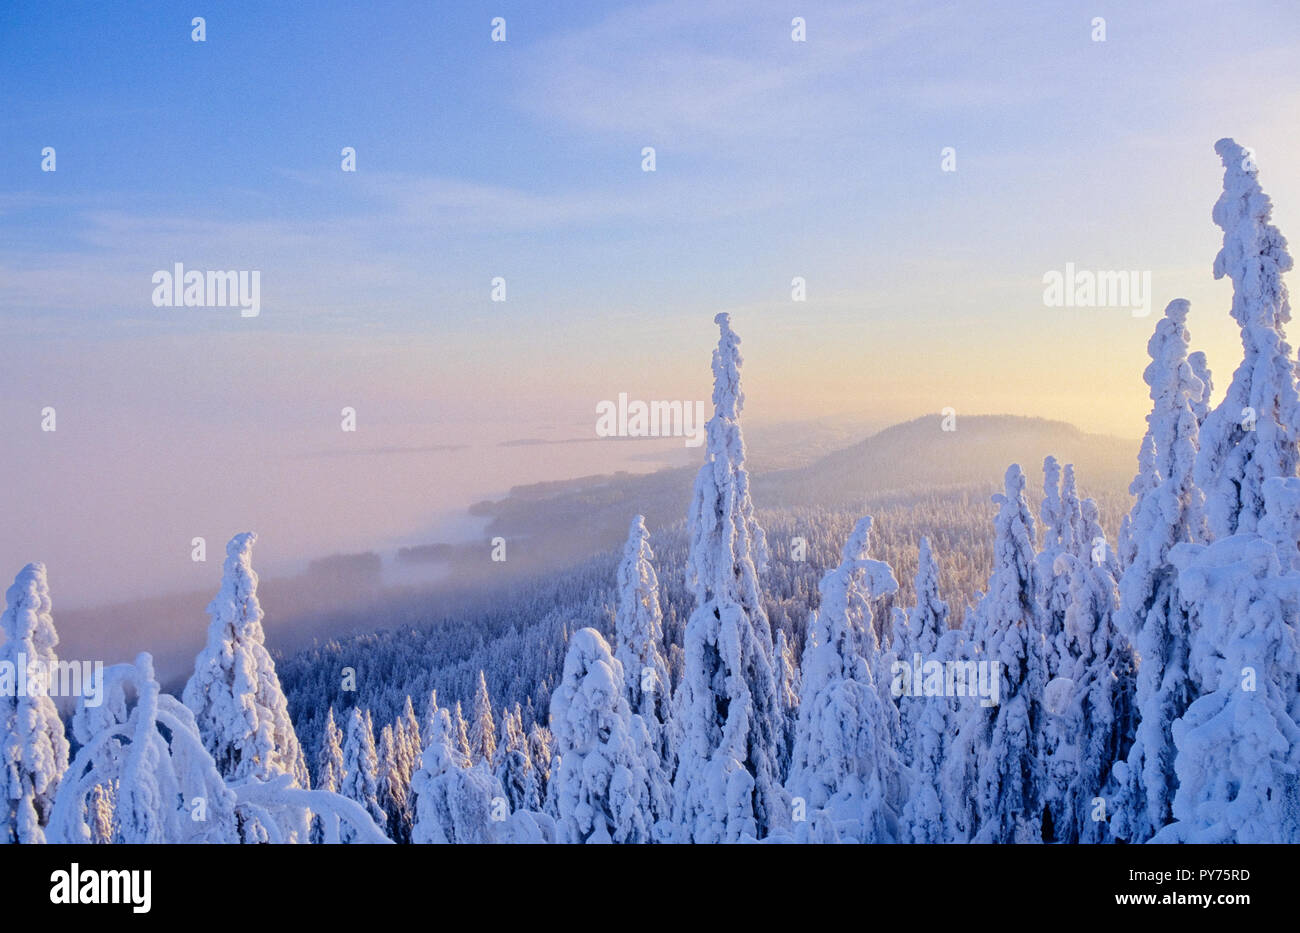 Schnee bedeckt borealen Wäldern. Koli Nationalpark im Osten Finnlands. Vom Film gescannt. Stockfoto